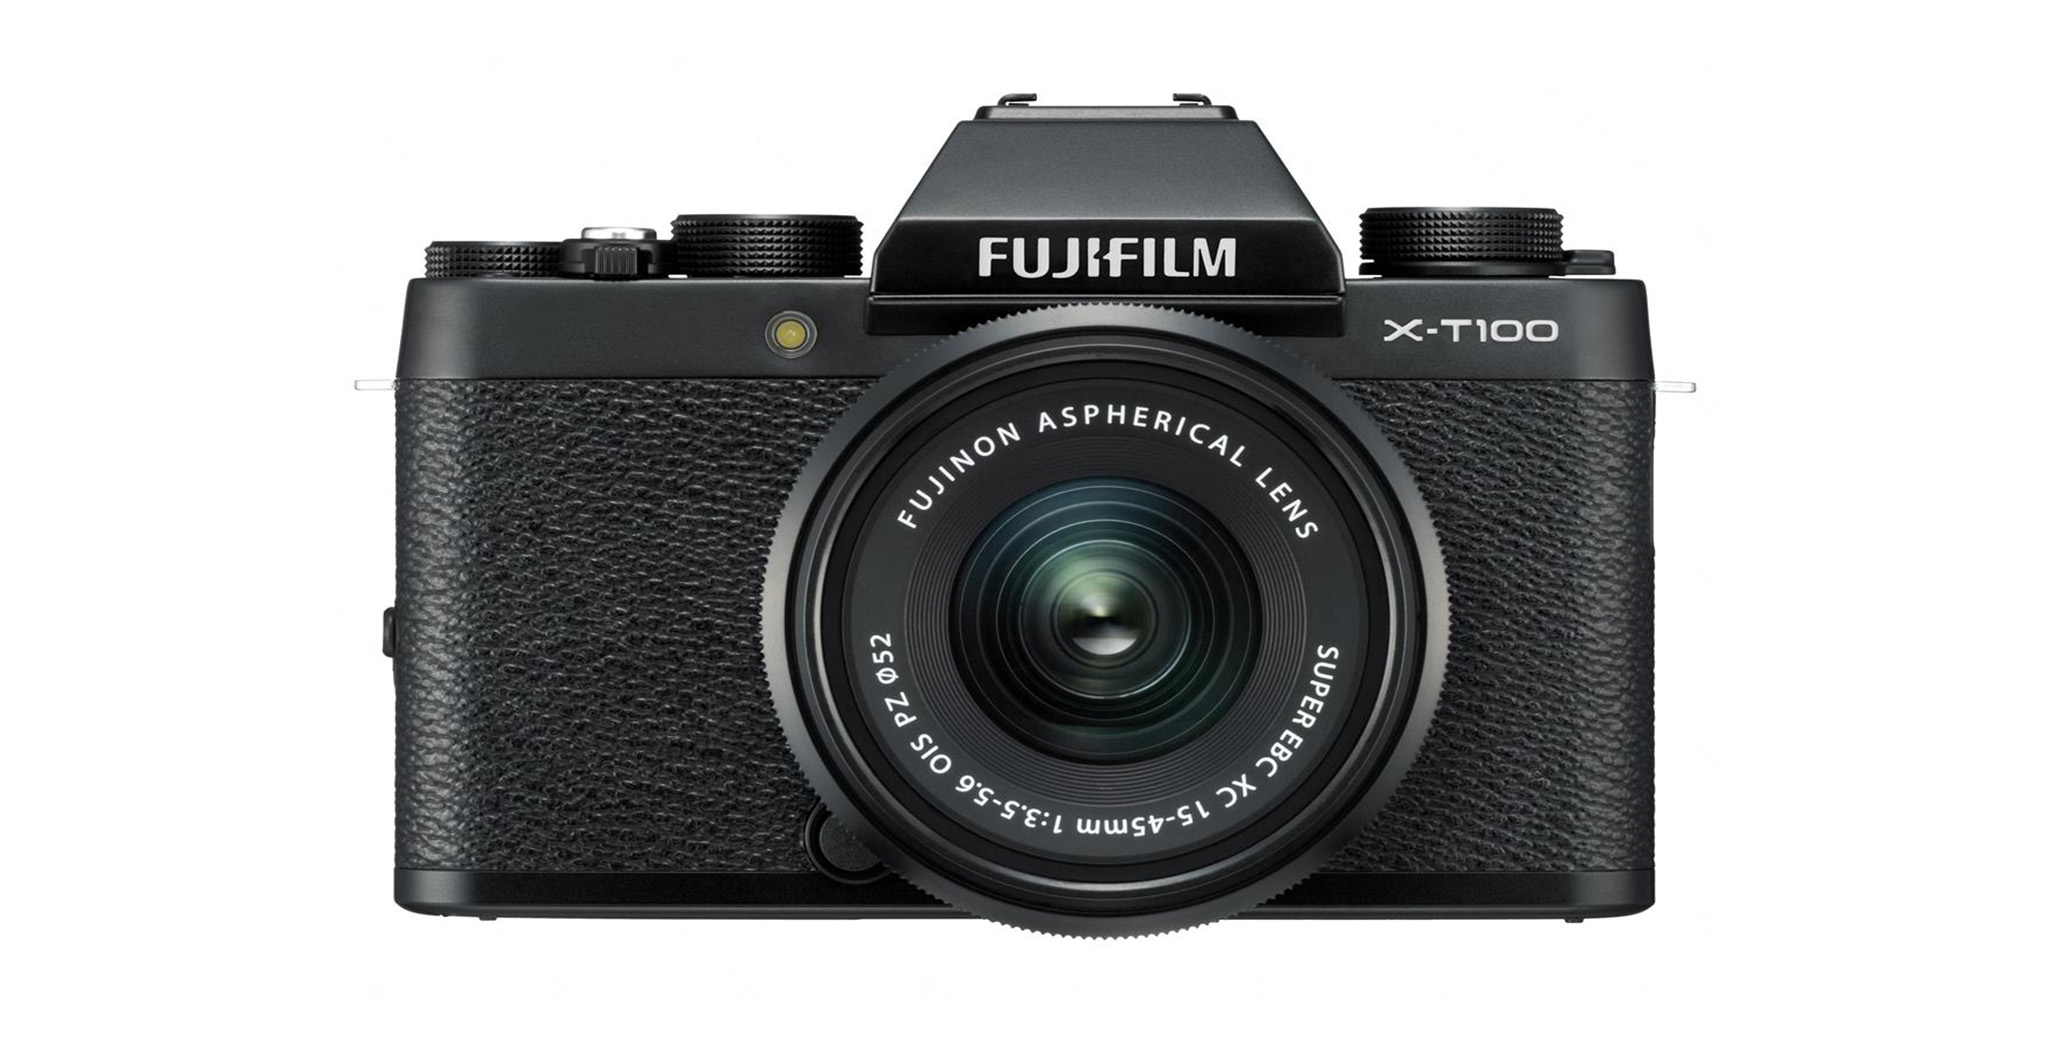 Giá bán chính thức Fuji X-T100 : 600$ riêng thân máy & 700$ kèm ống kính Kit